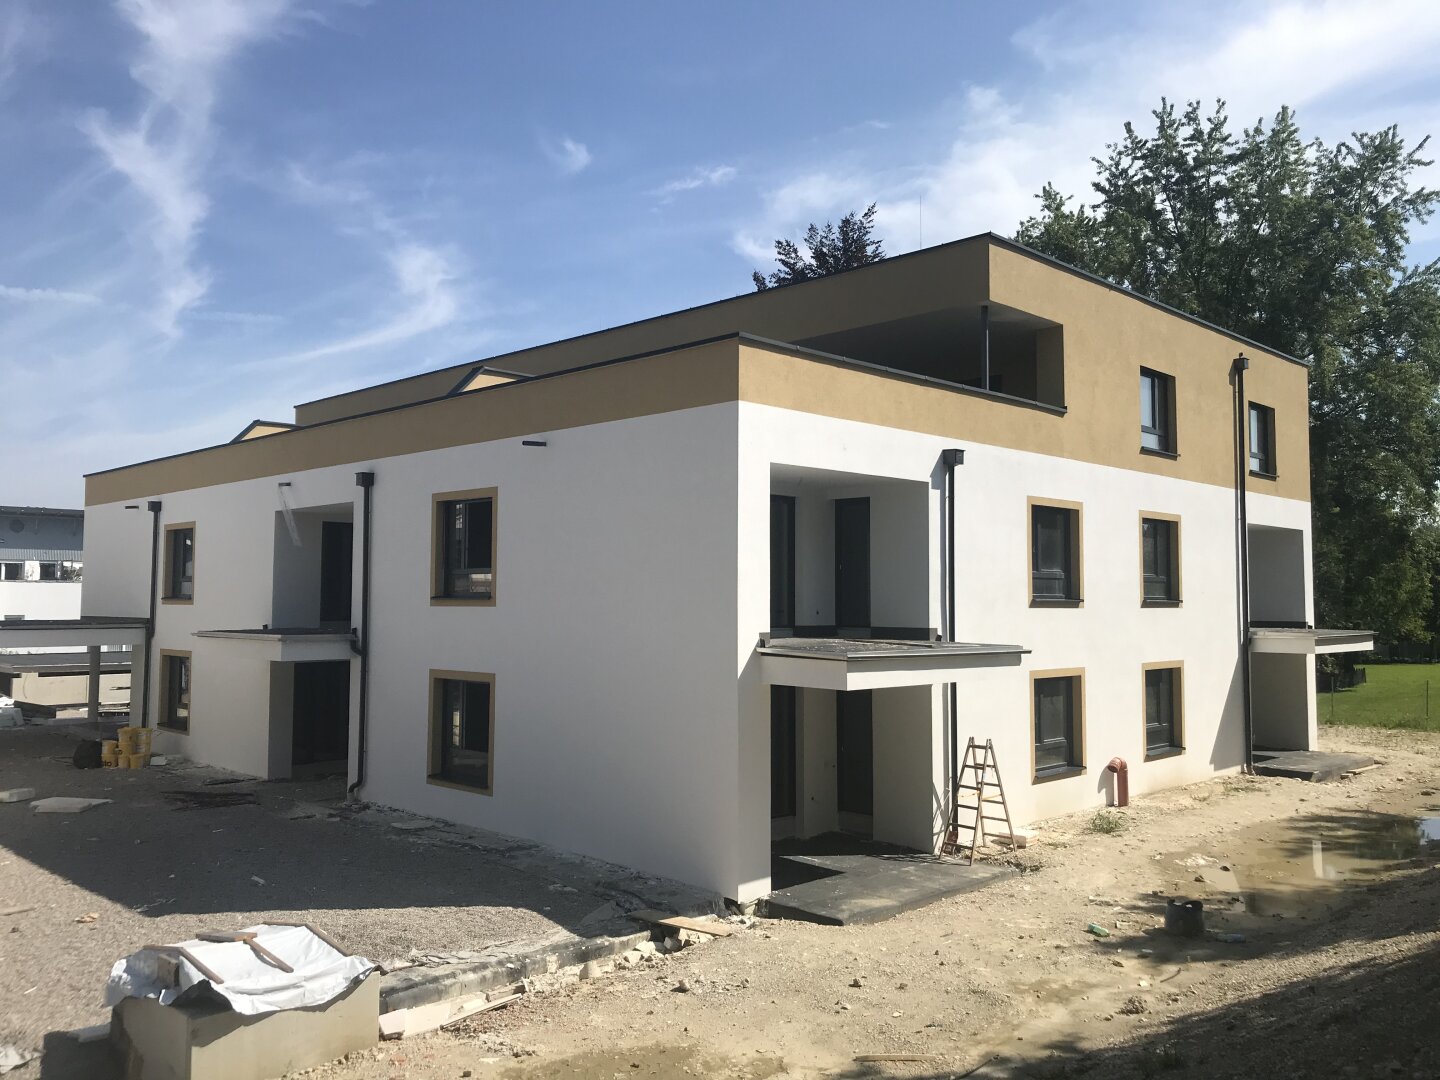 Projekt RIED² -  Top B5 81,31m² Gartenwohnung - 22 neue Eigentumswohnungen am Stadtrand von Ried im Innkreis